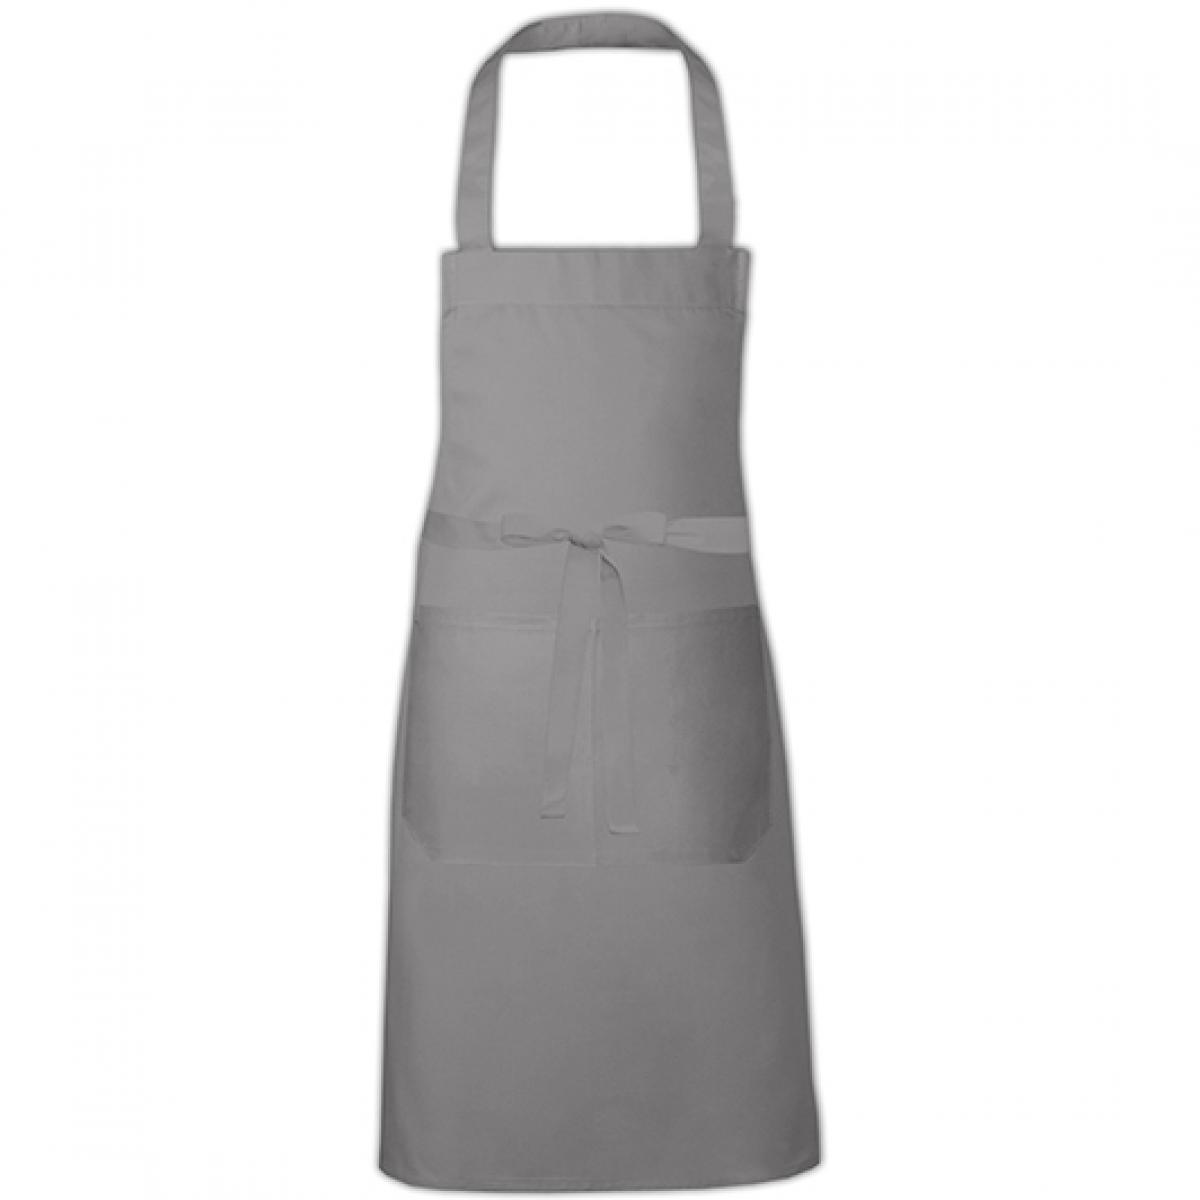 Hersteller: Link Kitchen Wear Herstellernummer: HSC8070 Artikelbezeichnung: Cotton Hobby Apron - Kochschürze Farbe: Mouse Grey